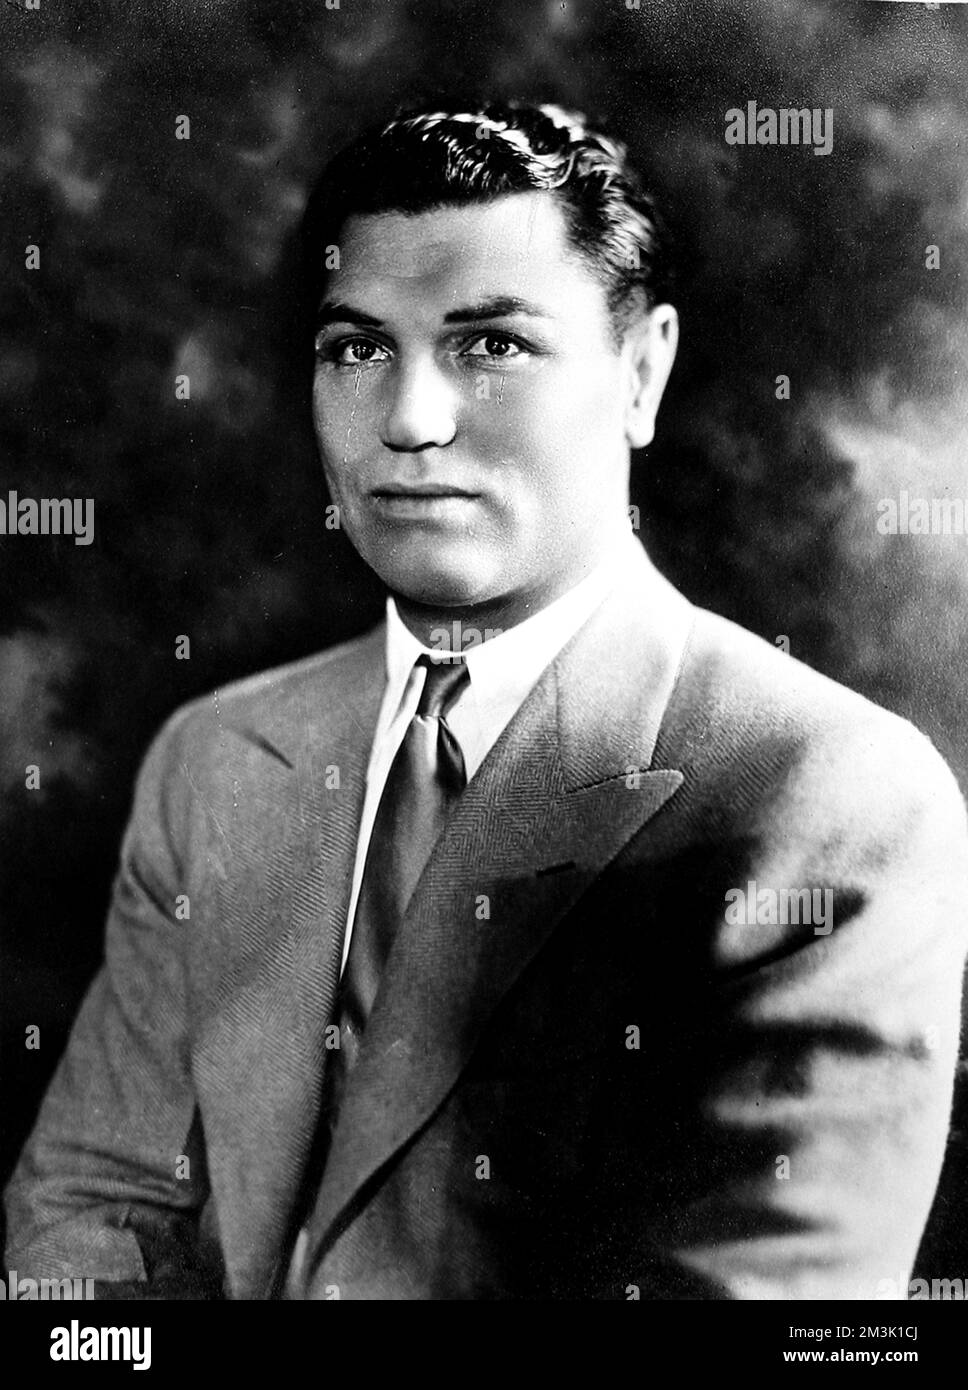 Jack Dempsey (1895-1983), amerikanischer Schwergewichtsboxer. Datum des Porträts unbekannt. Stockfoto